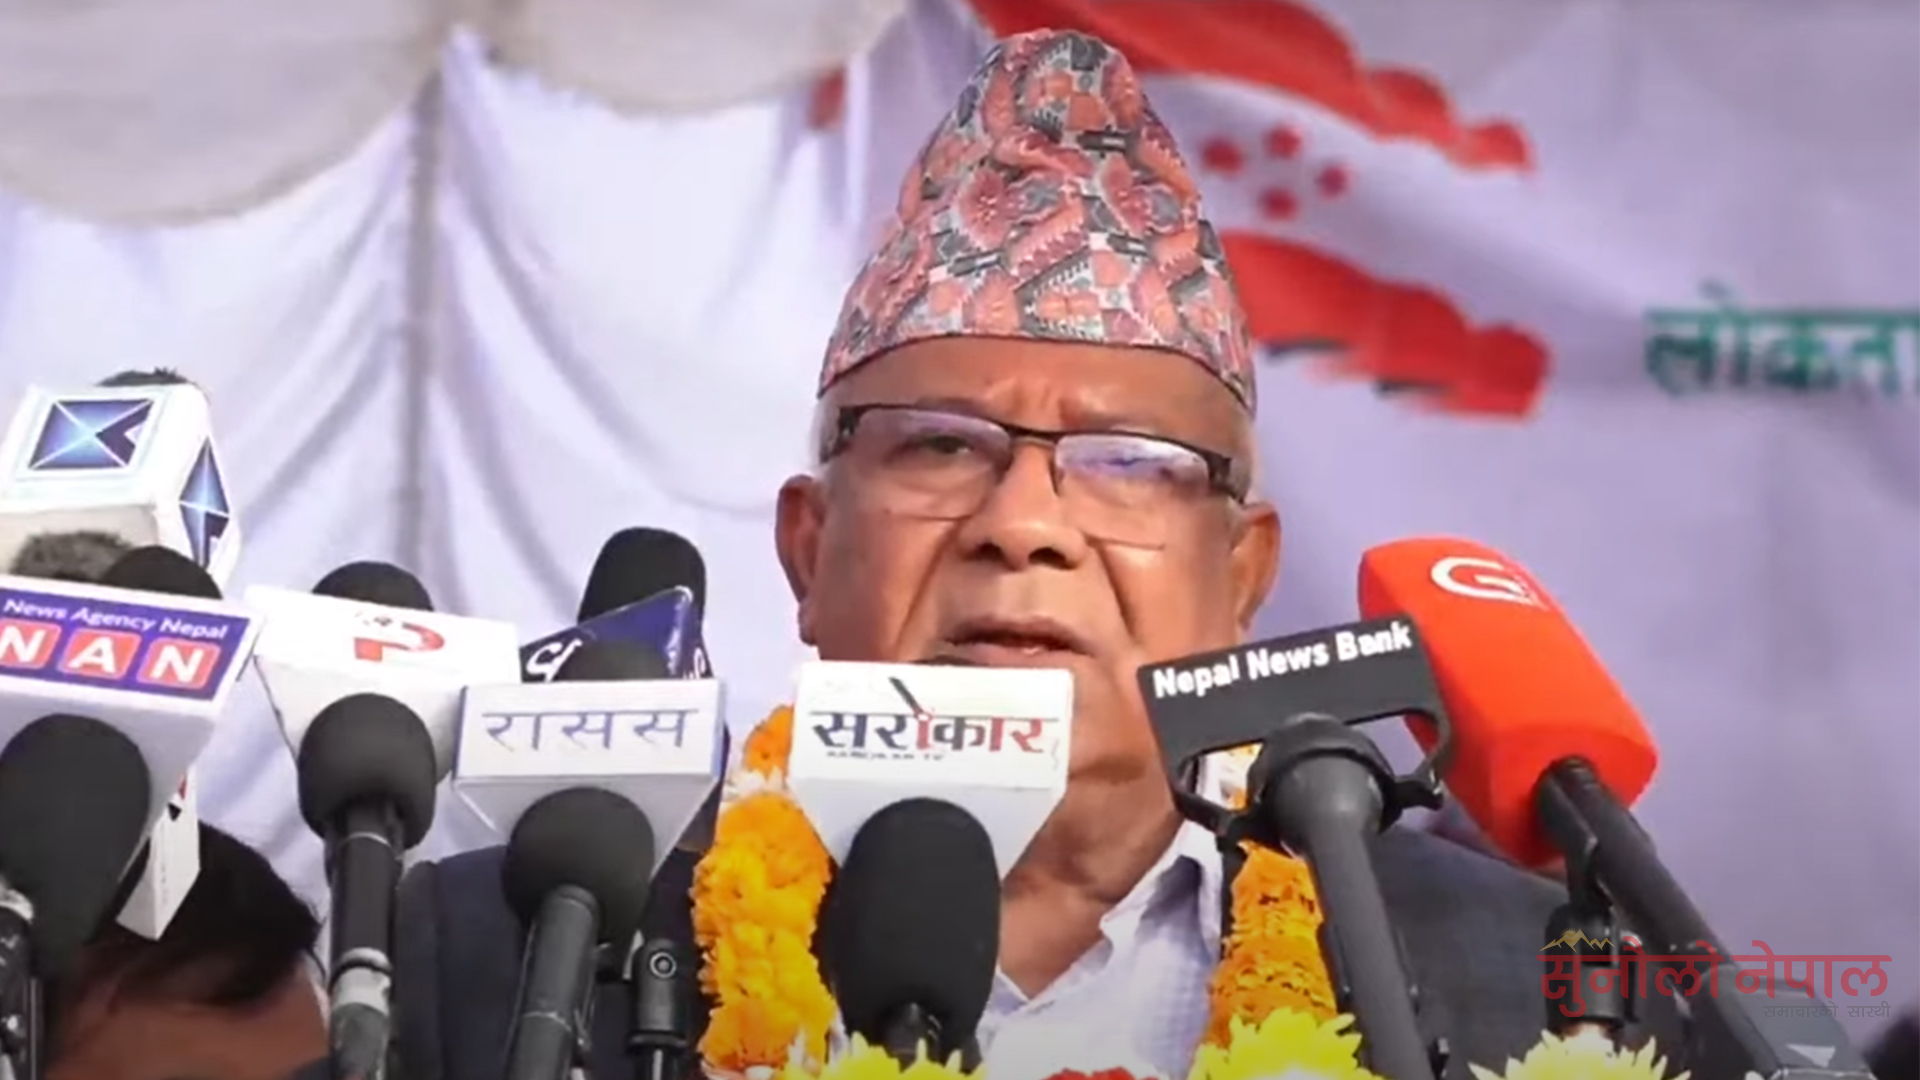 राष्ट्रिय स्वतन्त्र पार्टी मुलुकका लागि घाँडो भयो : अध्यक्ष नेपाल